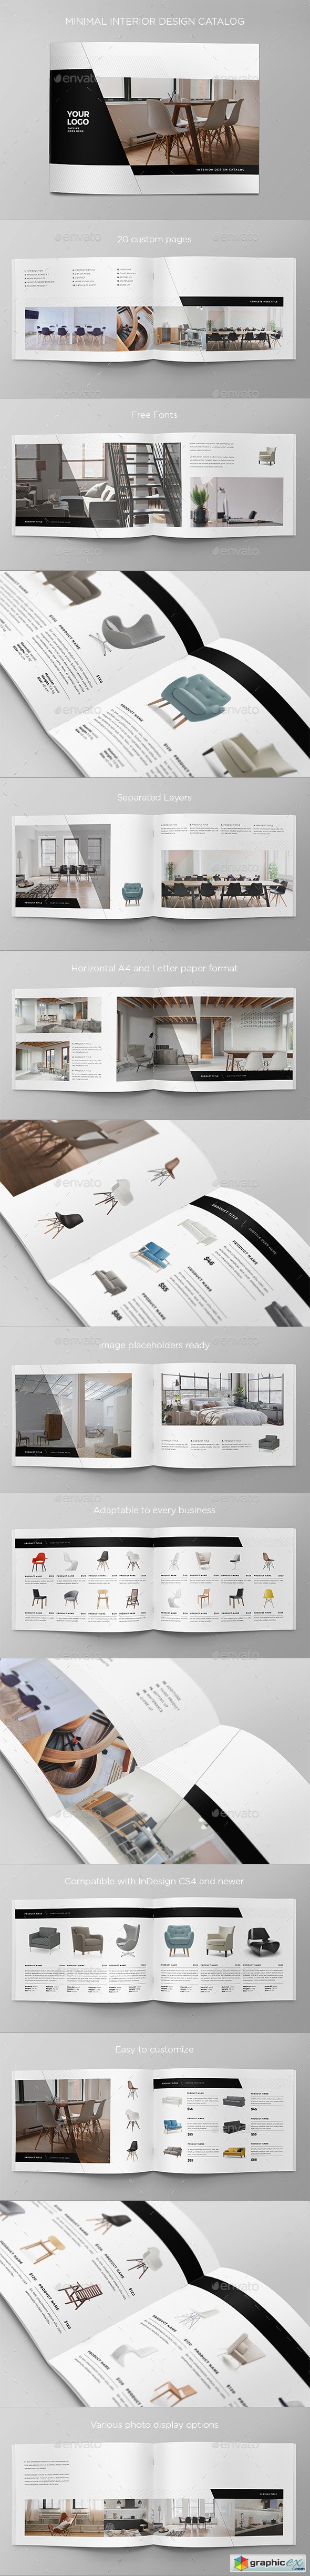 Minimal Interior Design Catalog 20507492